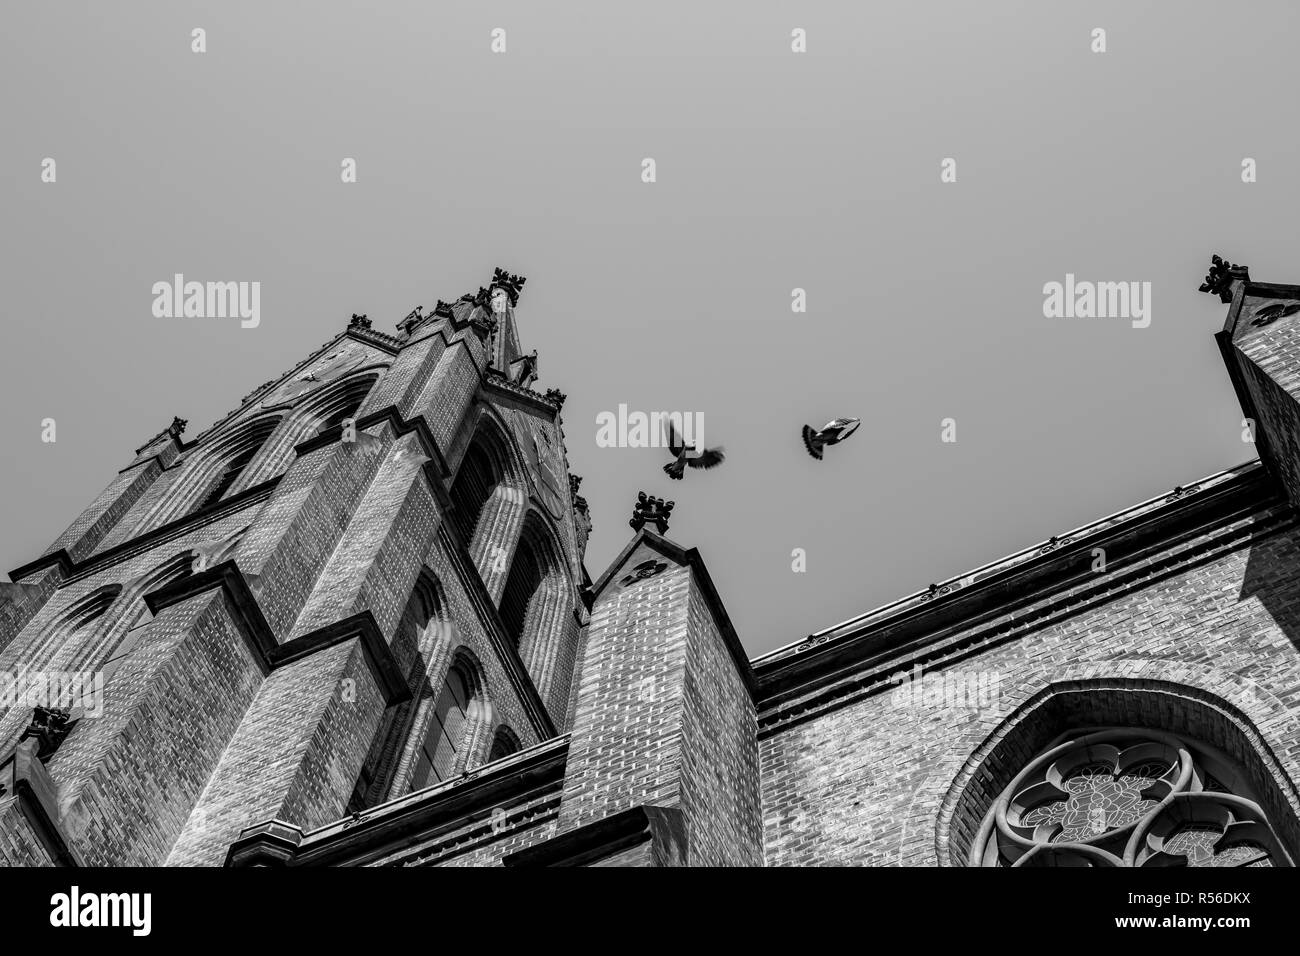 Tauben einander jagen auf schöne katholische Kirche Dach, Prag, Tschechische Republik. Low Angle View, schwarz-weiß-Bild, klaren Sommer Tag sky Stockfoto